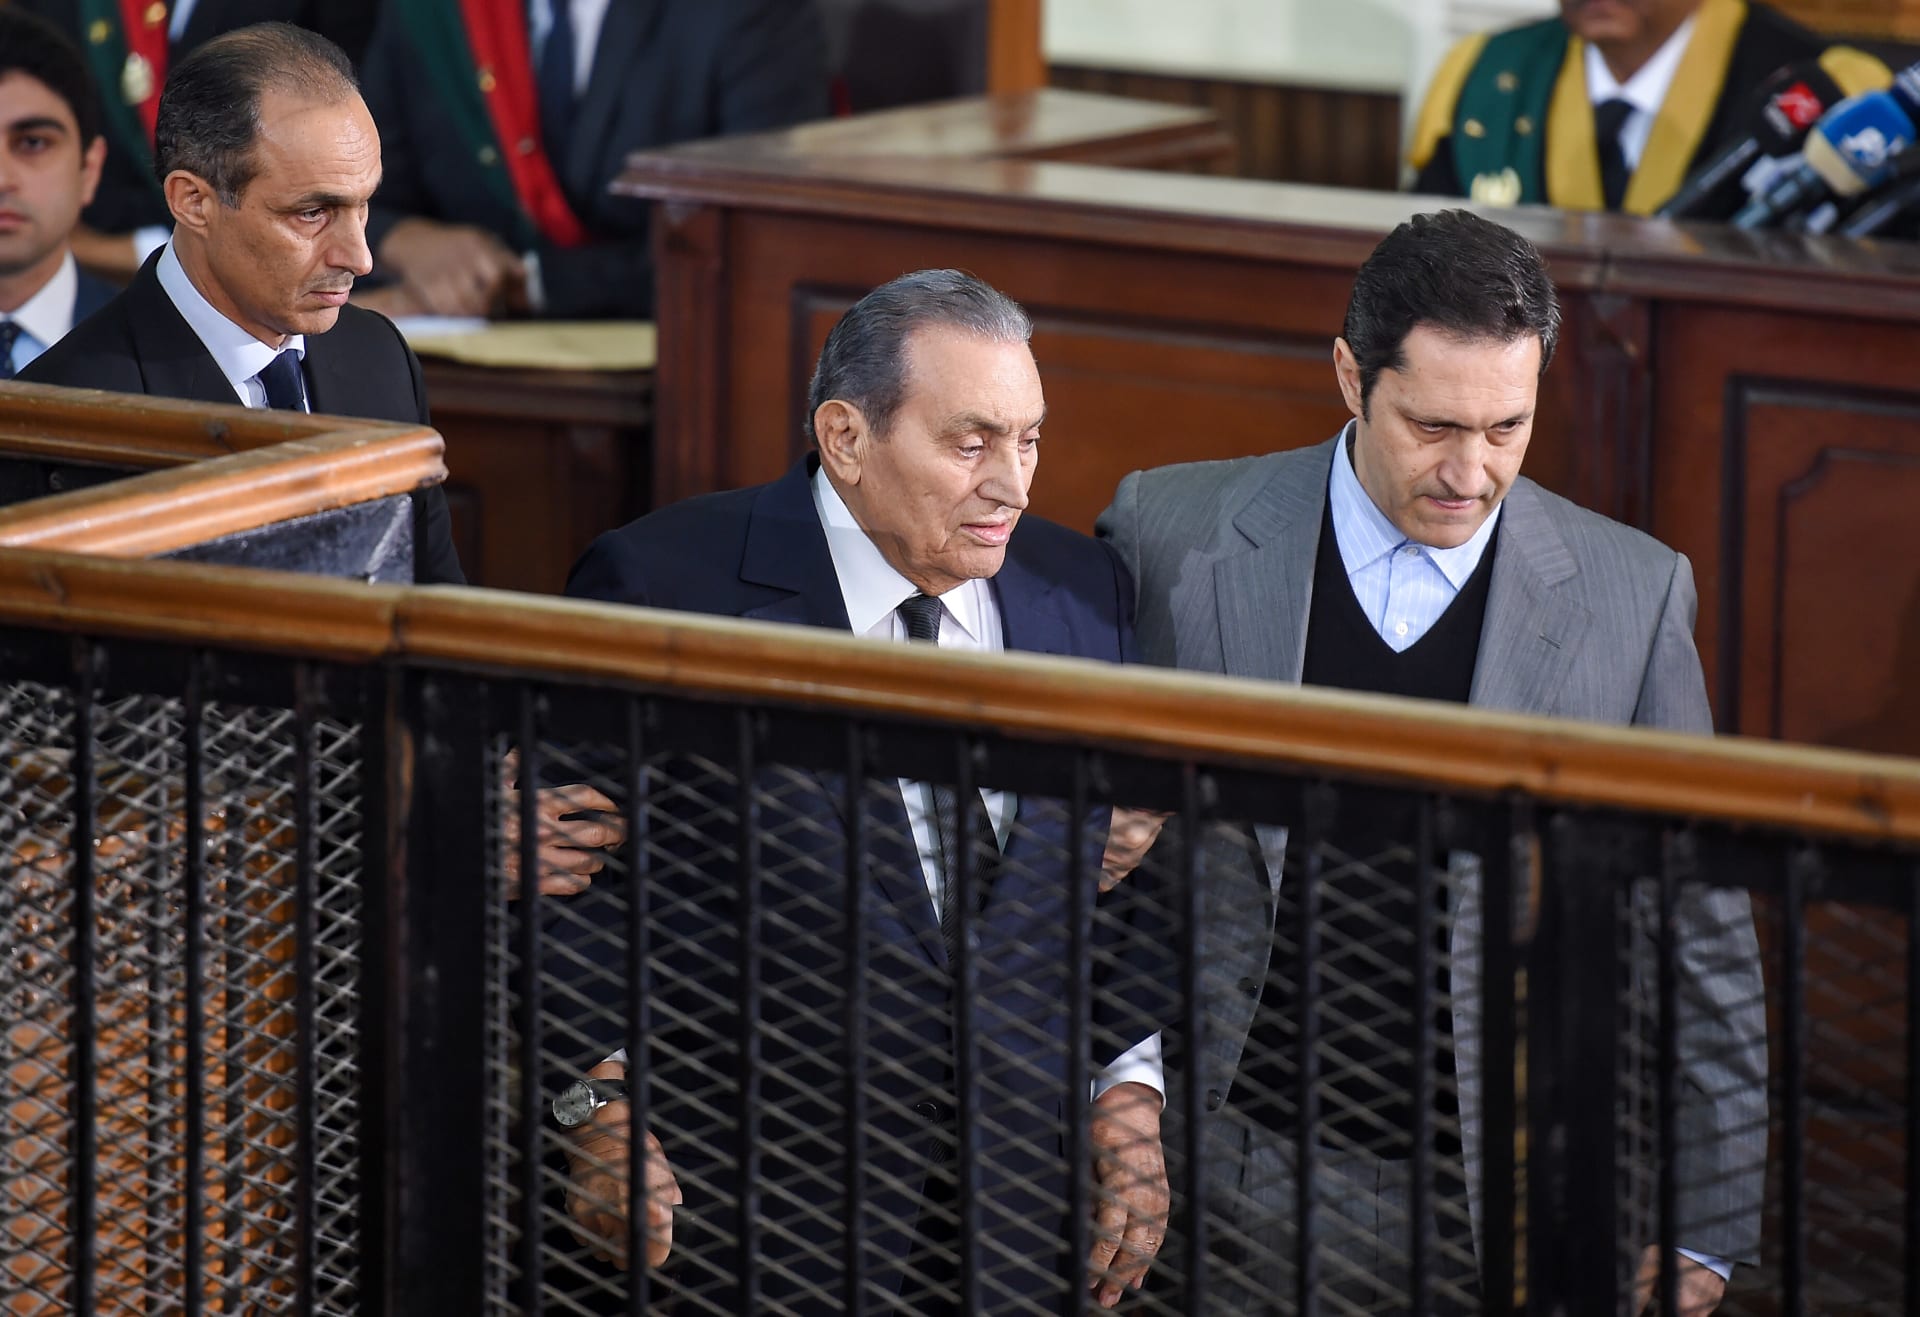 علاء مبارك: "الرئيس مبارك" يتحدث عن ذكريات حرب أكتوبر قريبا